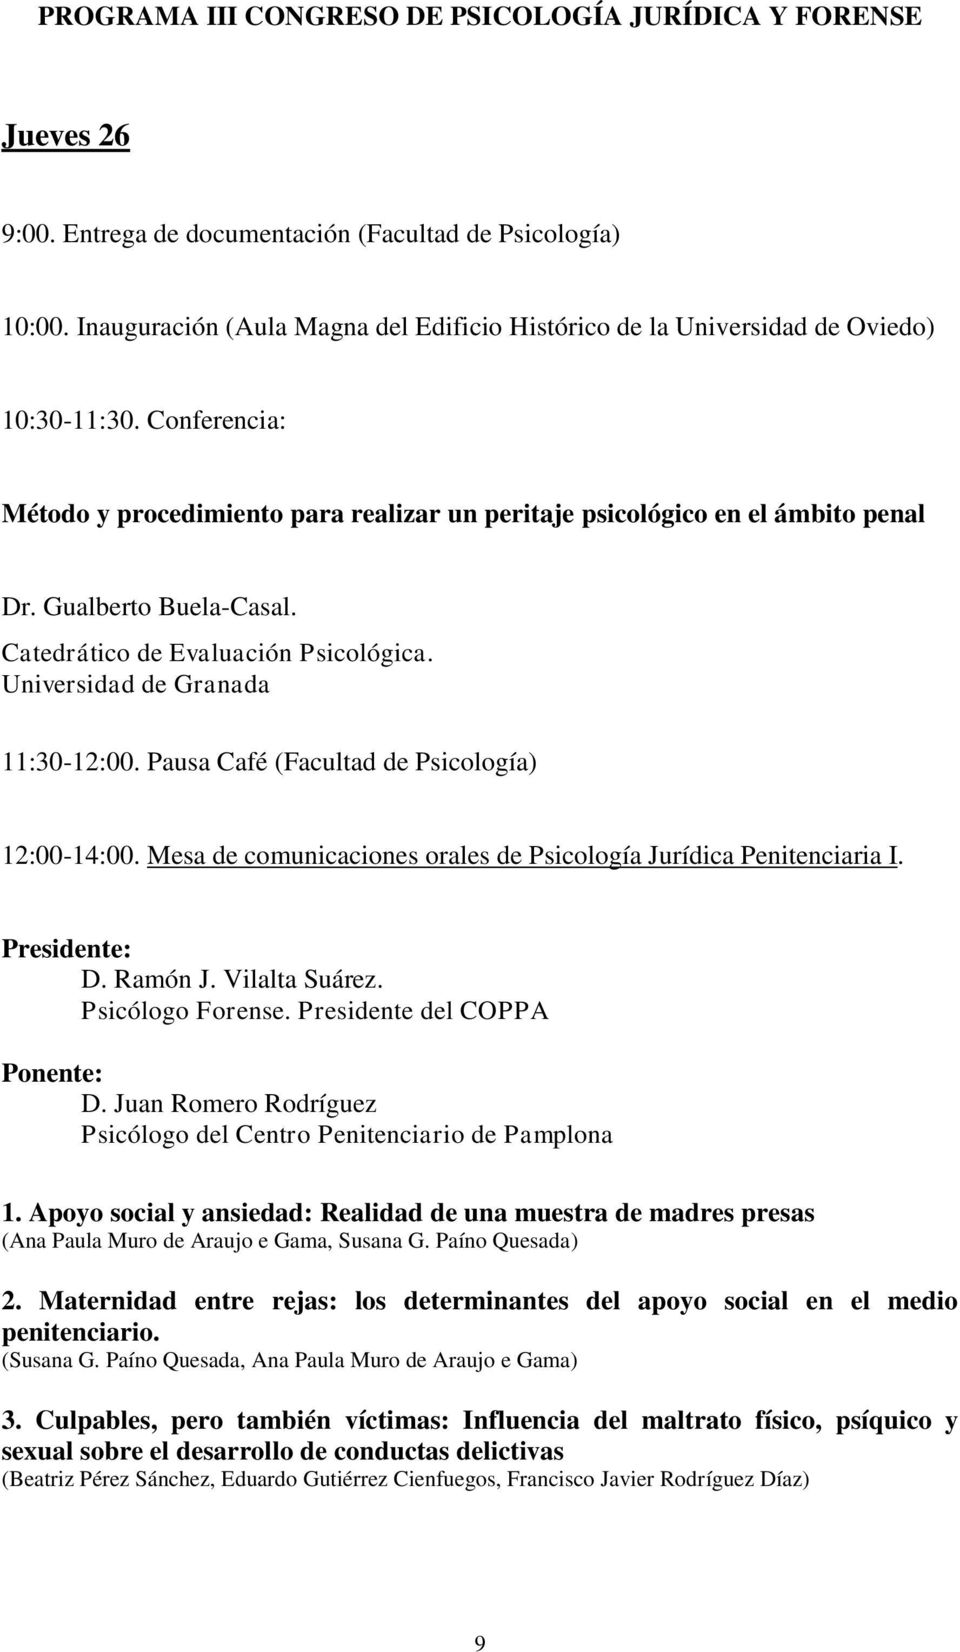 Gualberto Buela-Casal. Catedrático de Evaluación Psicológica. Universidad de Granada 11:30-12:00. Pausa Café (Facultad de Psicología) 12:00-14:00.